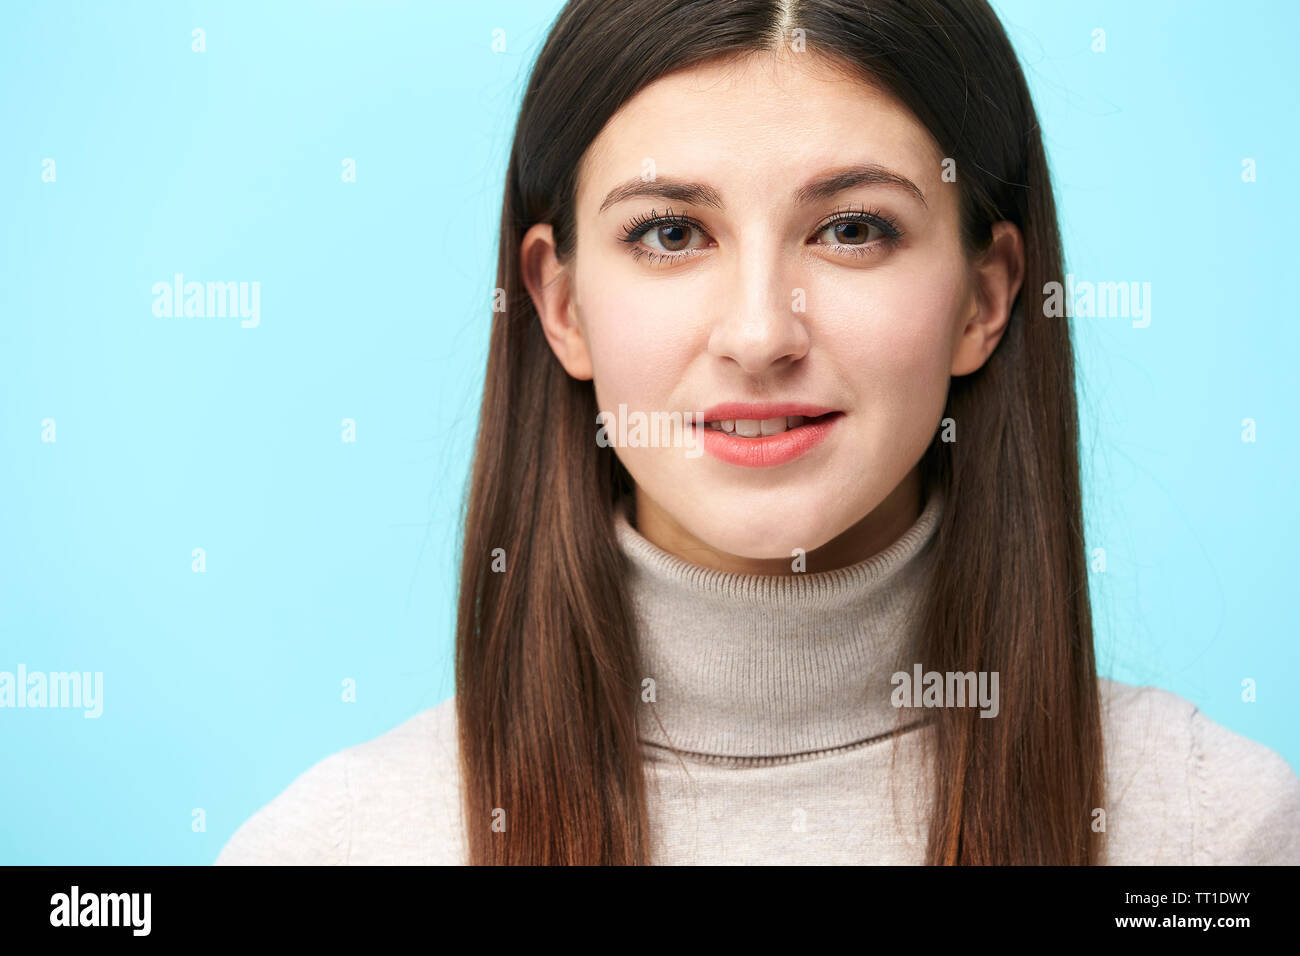 Porträt einer schönen jungen kaukasischen Frau, Kopf geschossen, in die Kamera lächeln suchen, auf blauem Hintergrund isoliert Stockfoto